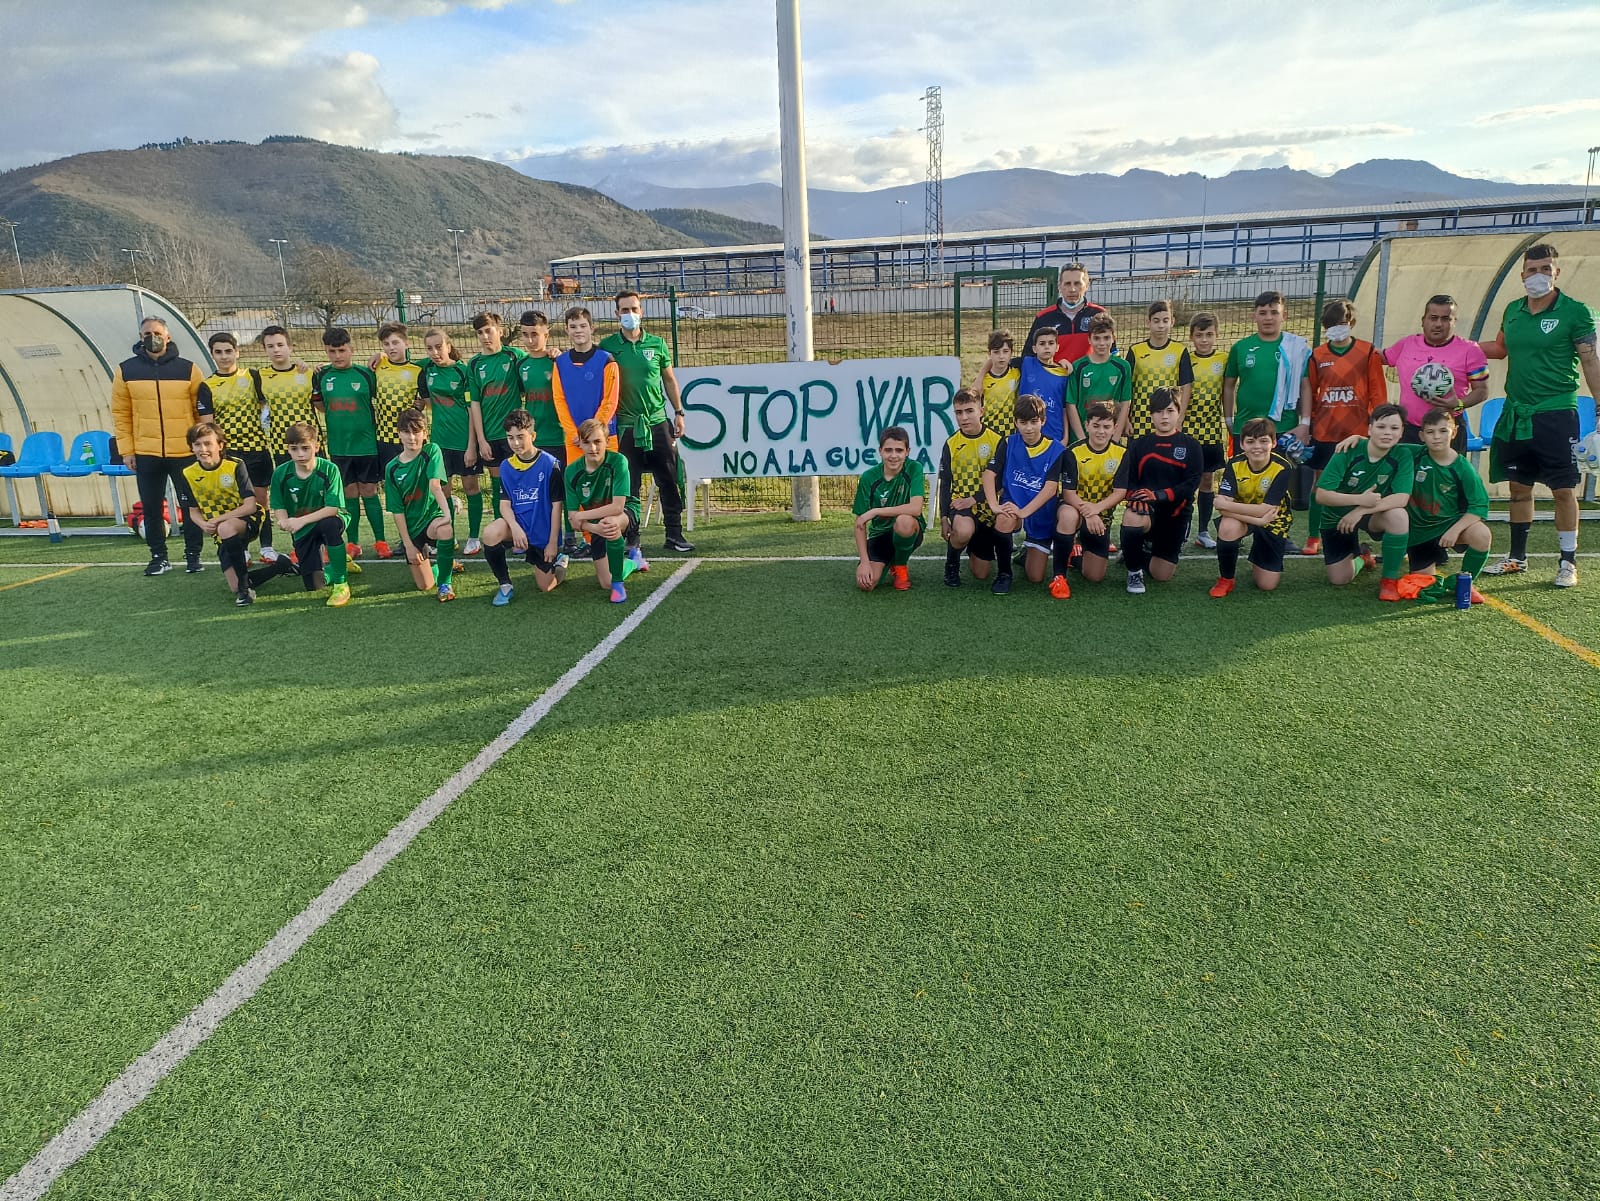 El fútbol Base berciano dice NO A LA GUERRA durante los partidos del fin de semana 8